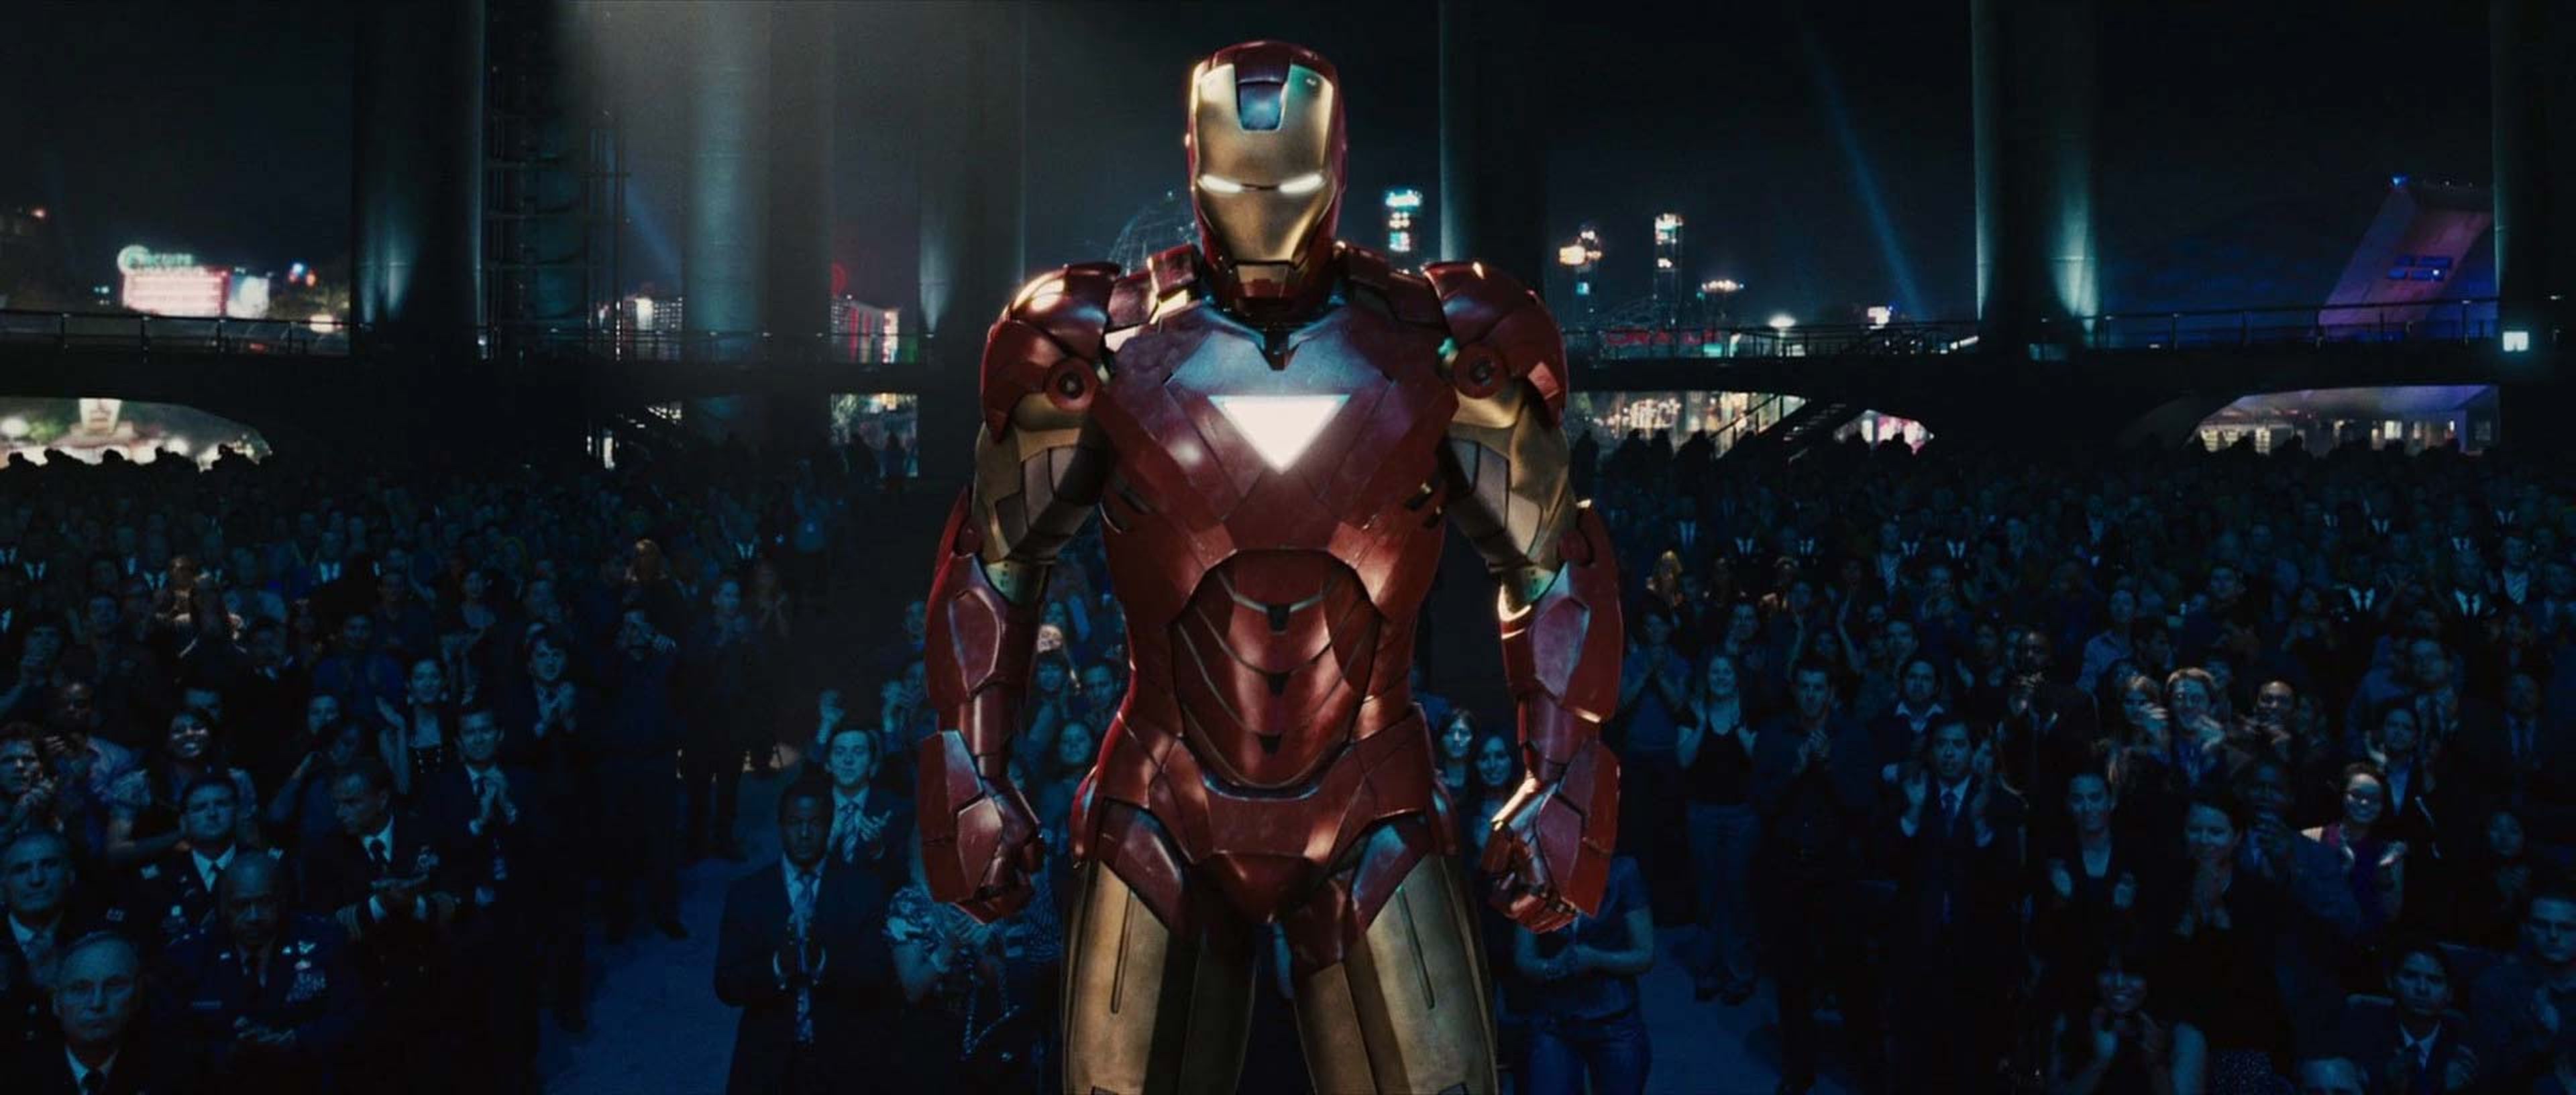 Iron Man Mark VI - Iron Man 2 (2010)